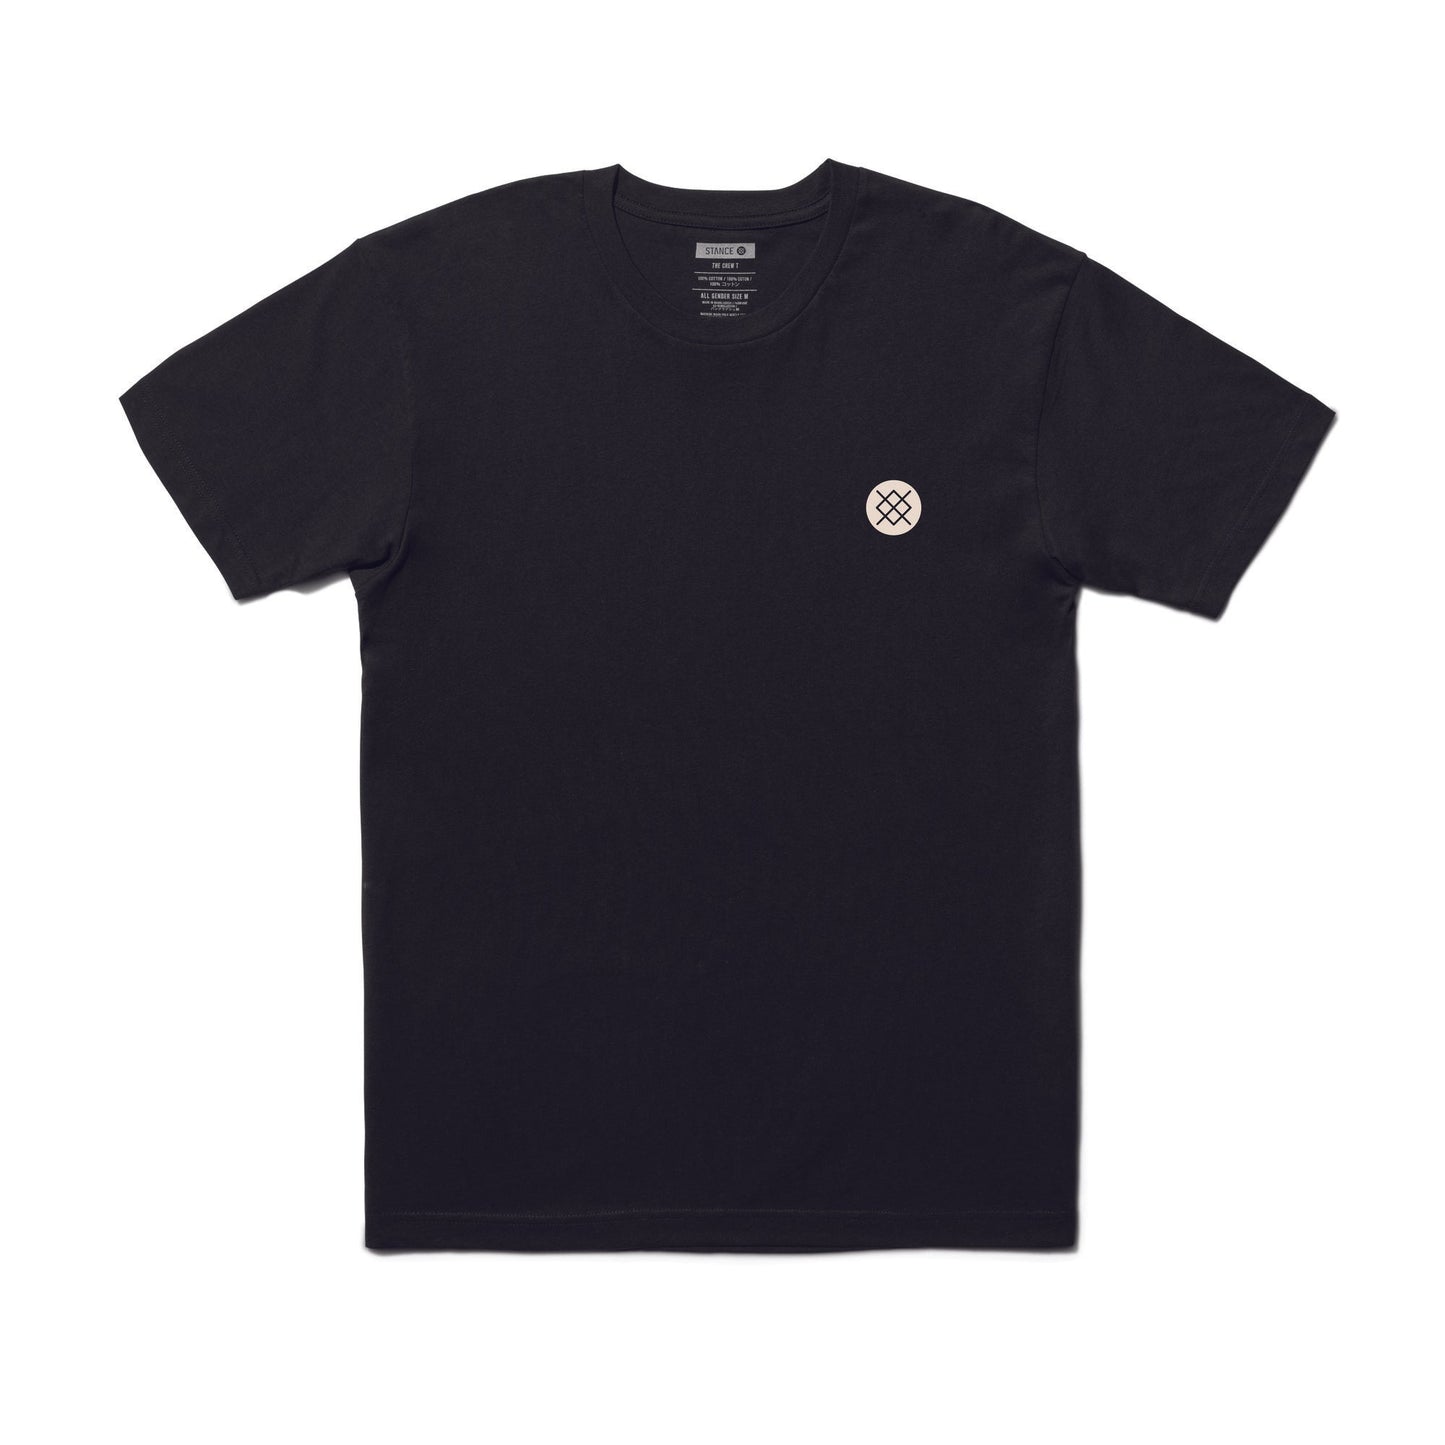 Stance Established T-Shirt Black